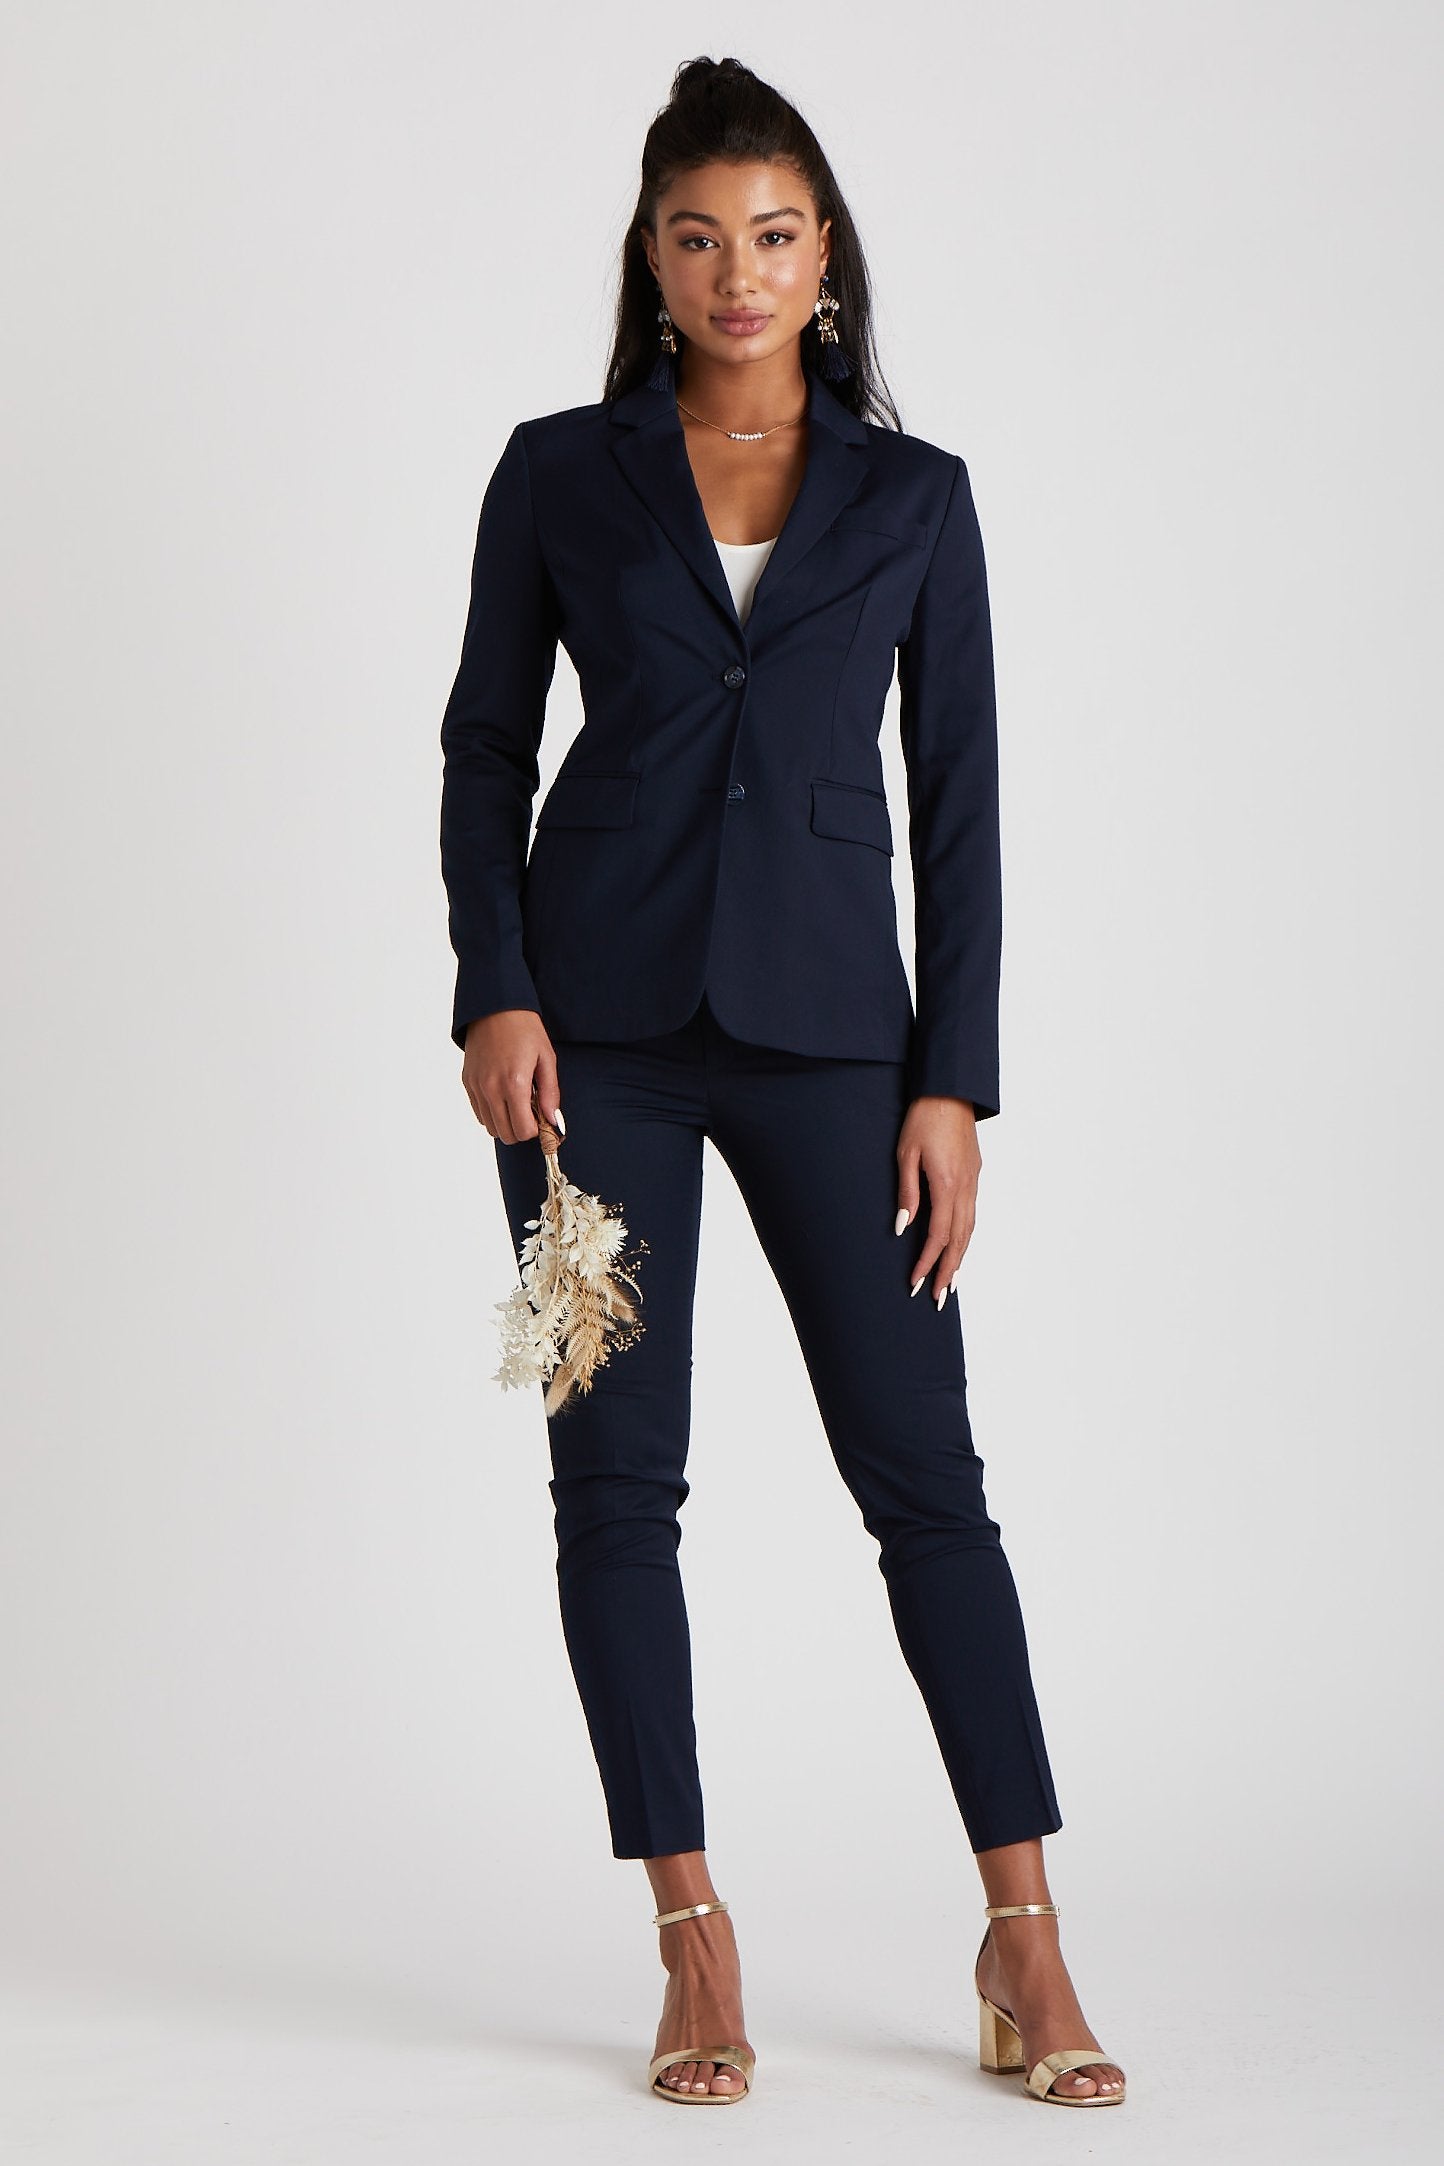 Women's Navy Blue Suit SuitShop | Grey